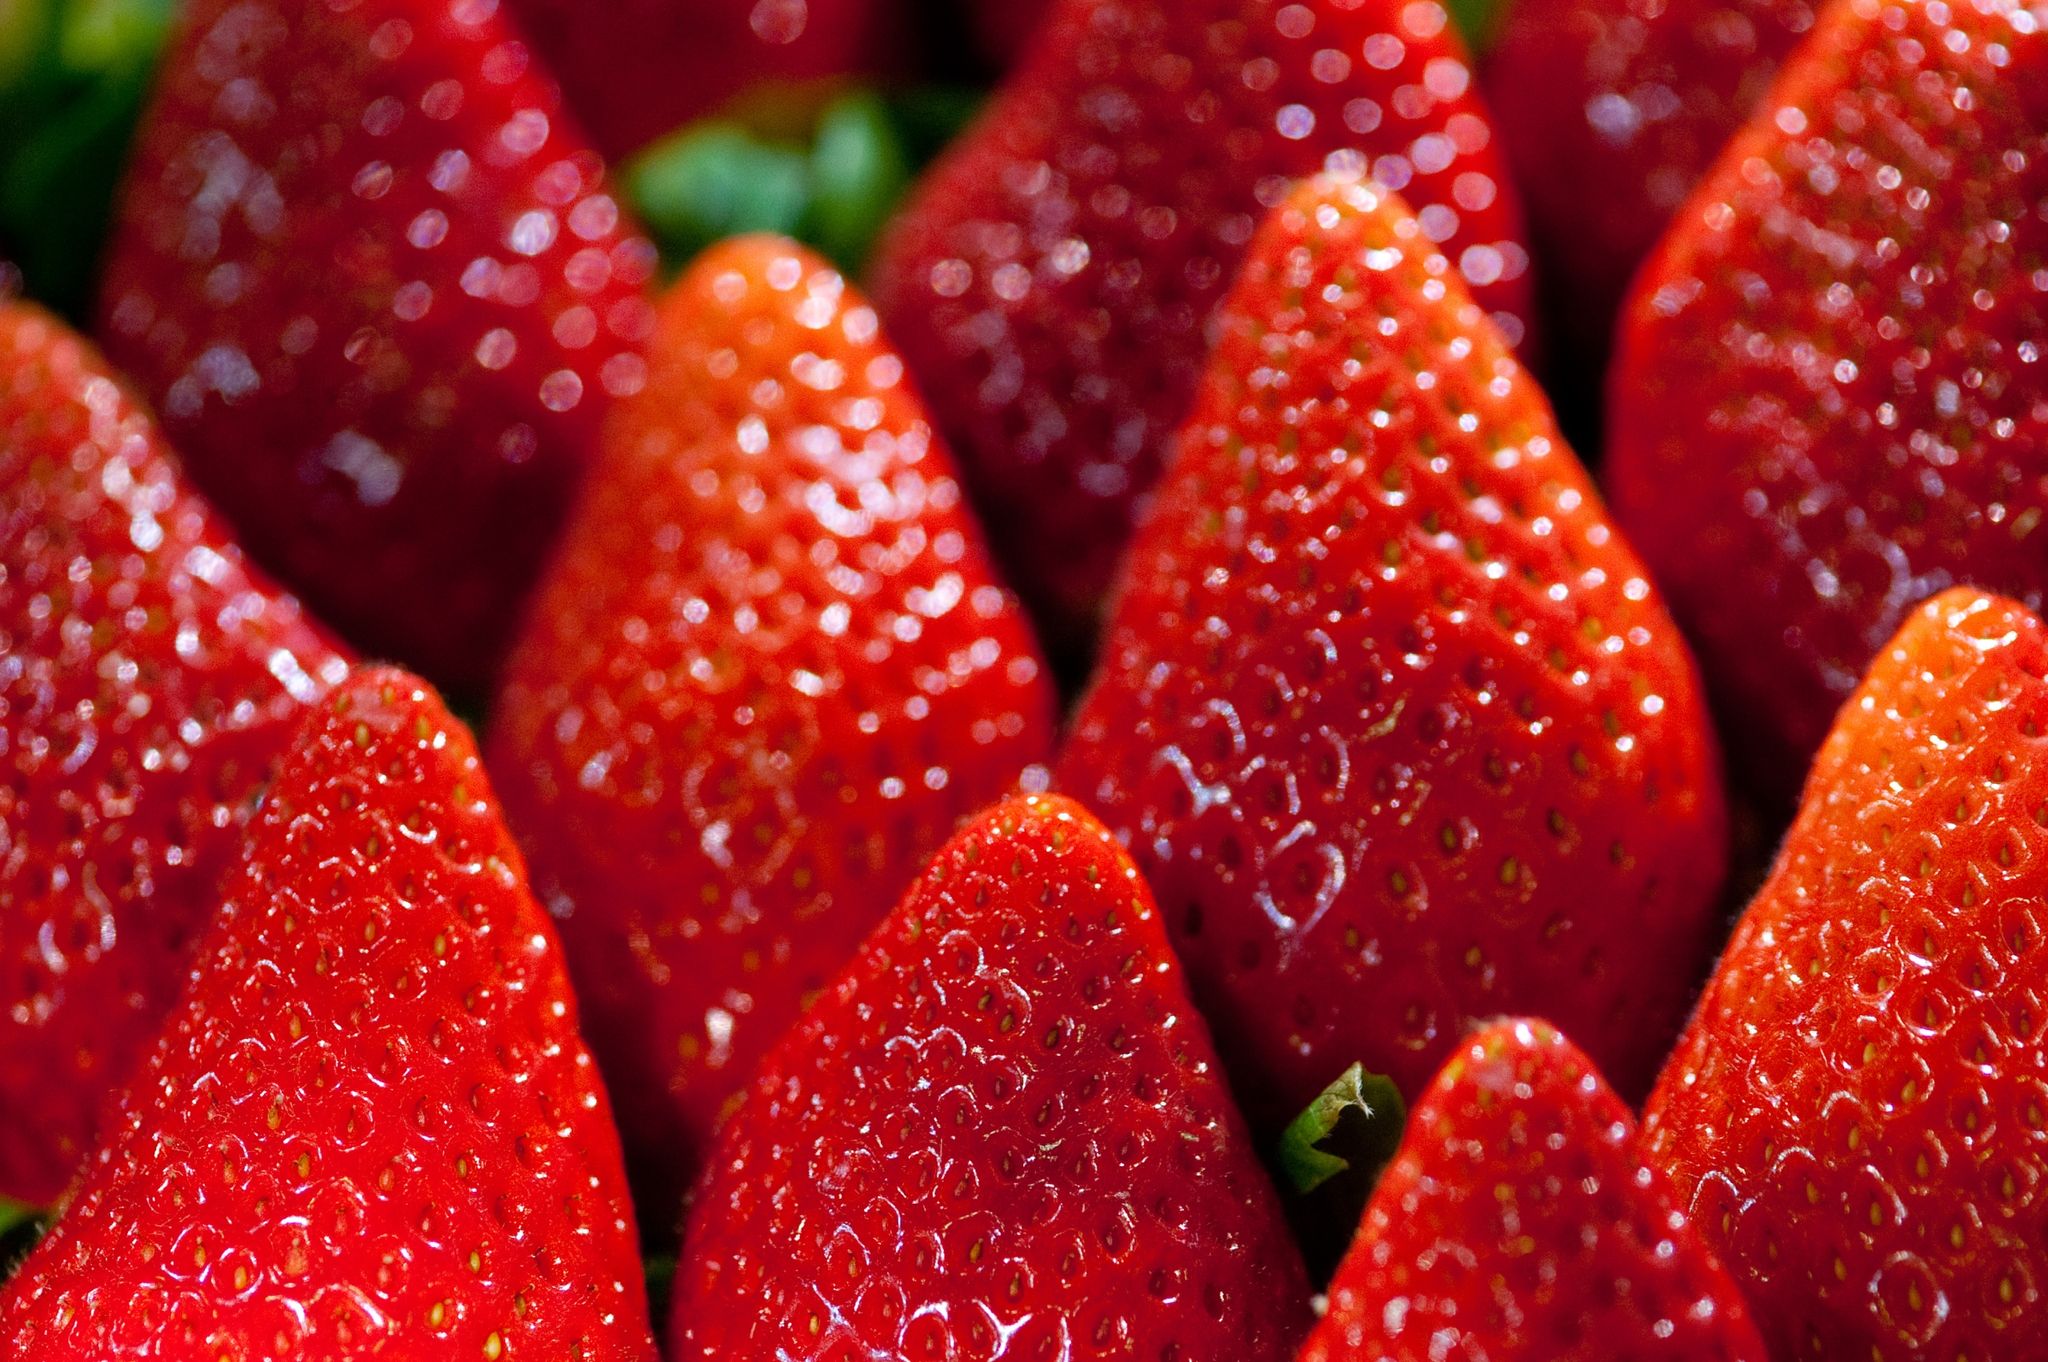 Da Anbau und Transport sehr energieintensiv sind, haben Früh-Erdbeeren eine verheerende Umweltbilanz.